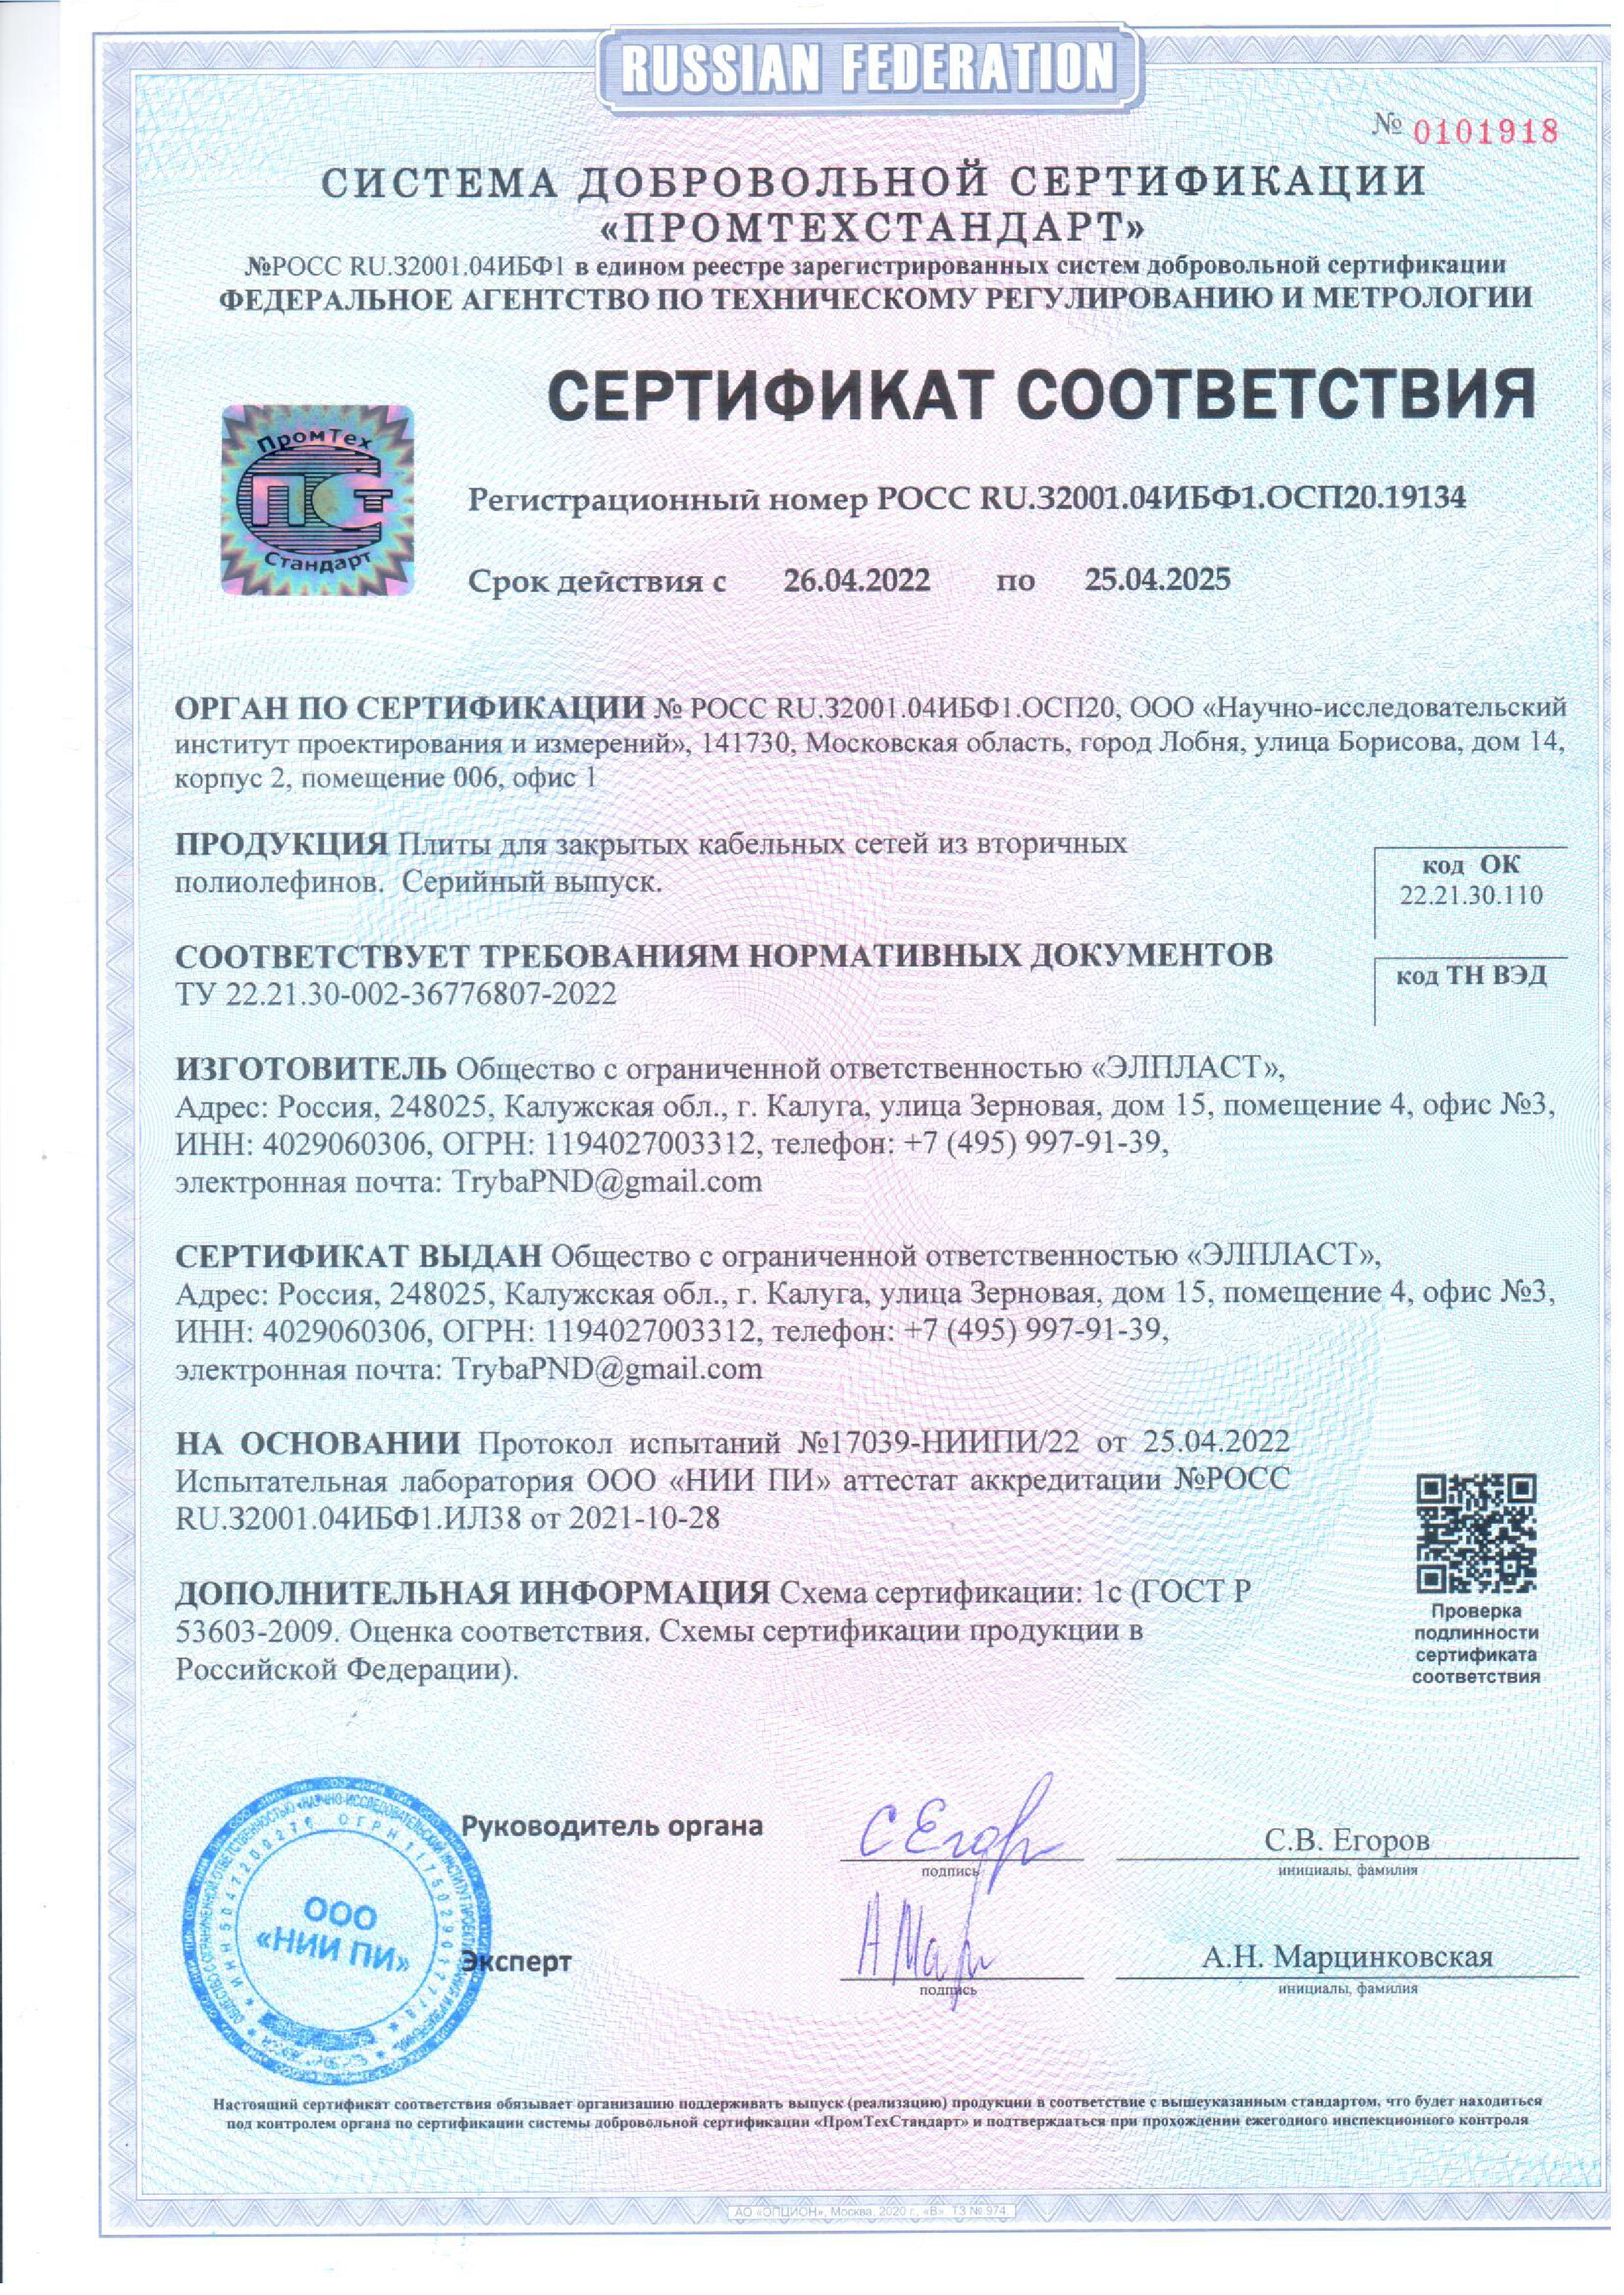 Сертификат соответствия плит закрытия кабельных сетей выдан ООО Элпласт